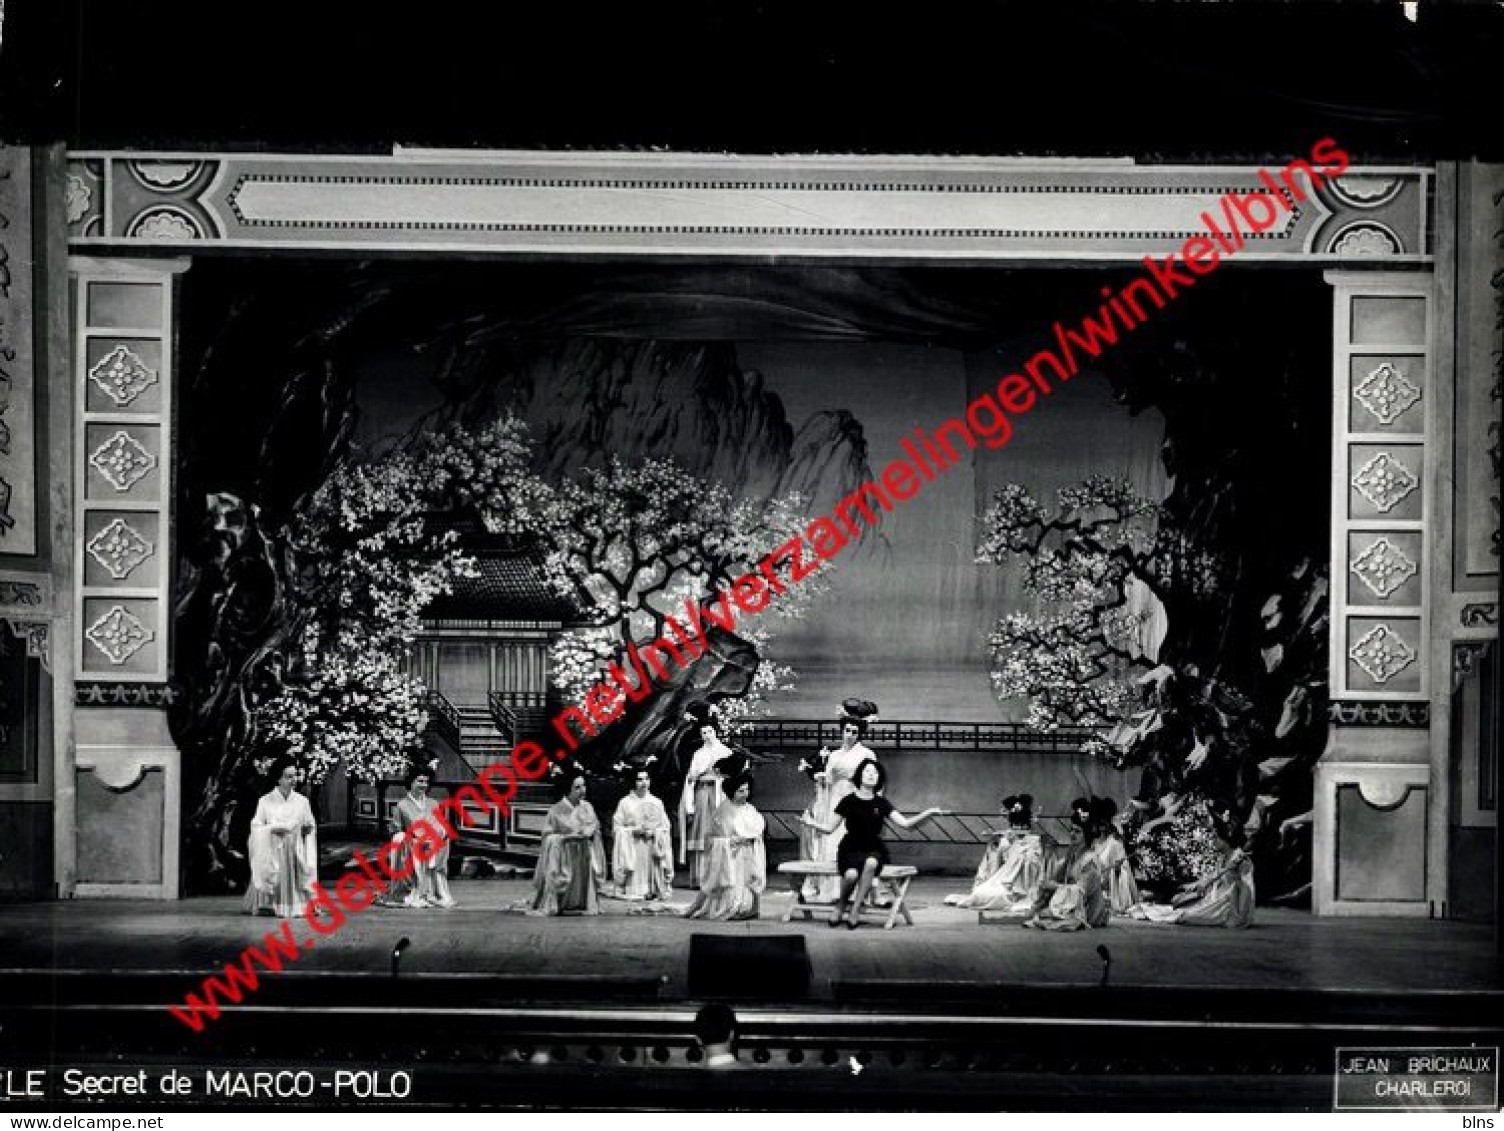 Le secret de Marco-Polo - mars 1961 - Charleroi - lot de 7 photos 24x17,5cm